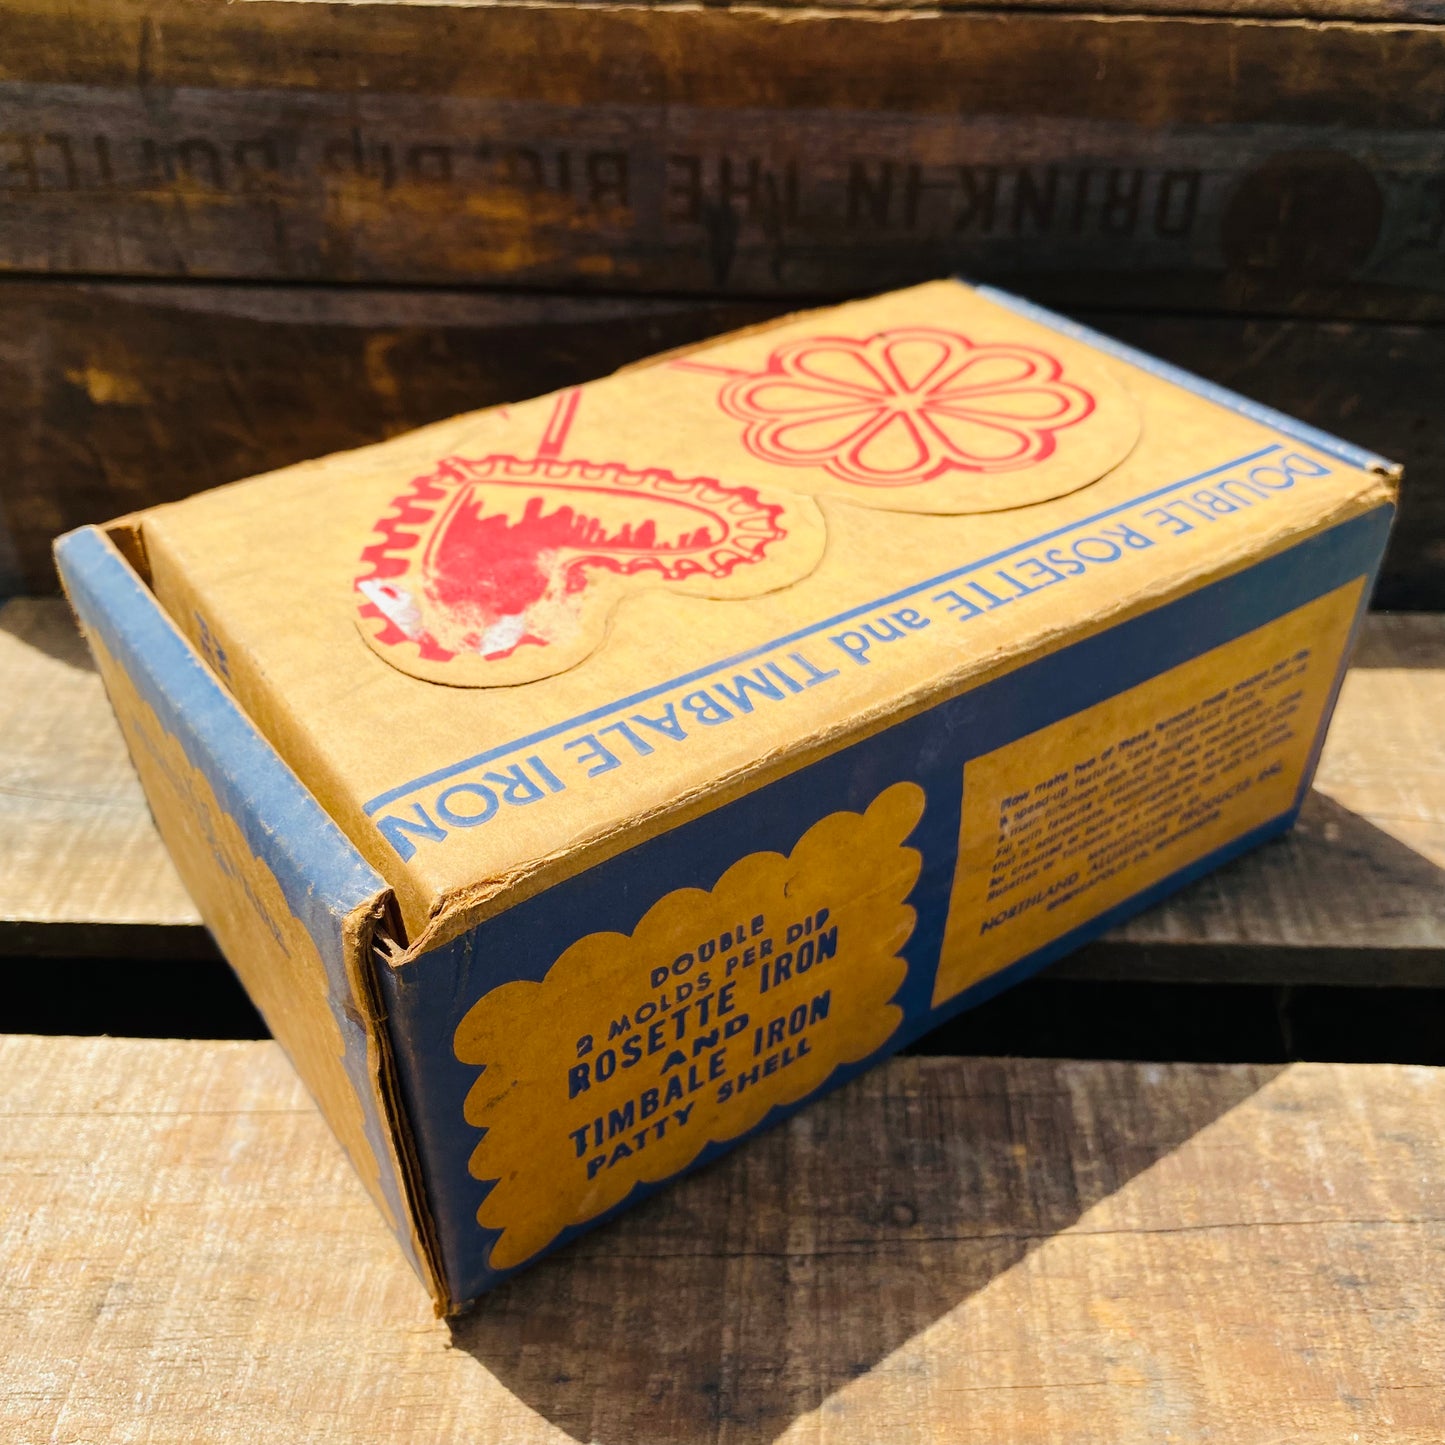 【USA vintage】NORDIC WARE ロゼットアイロン クッキー型